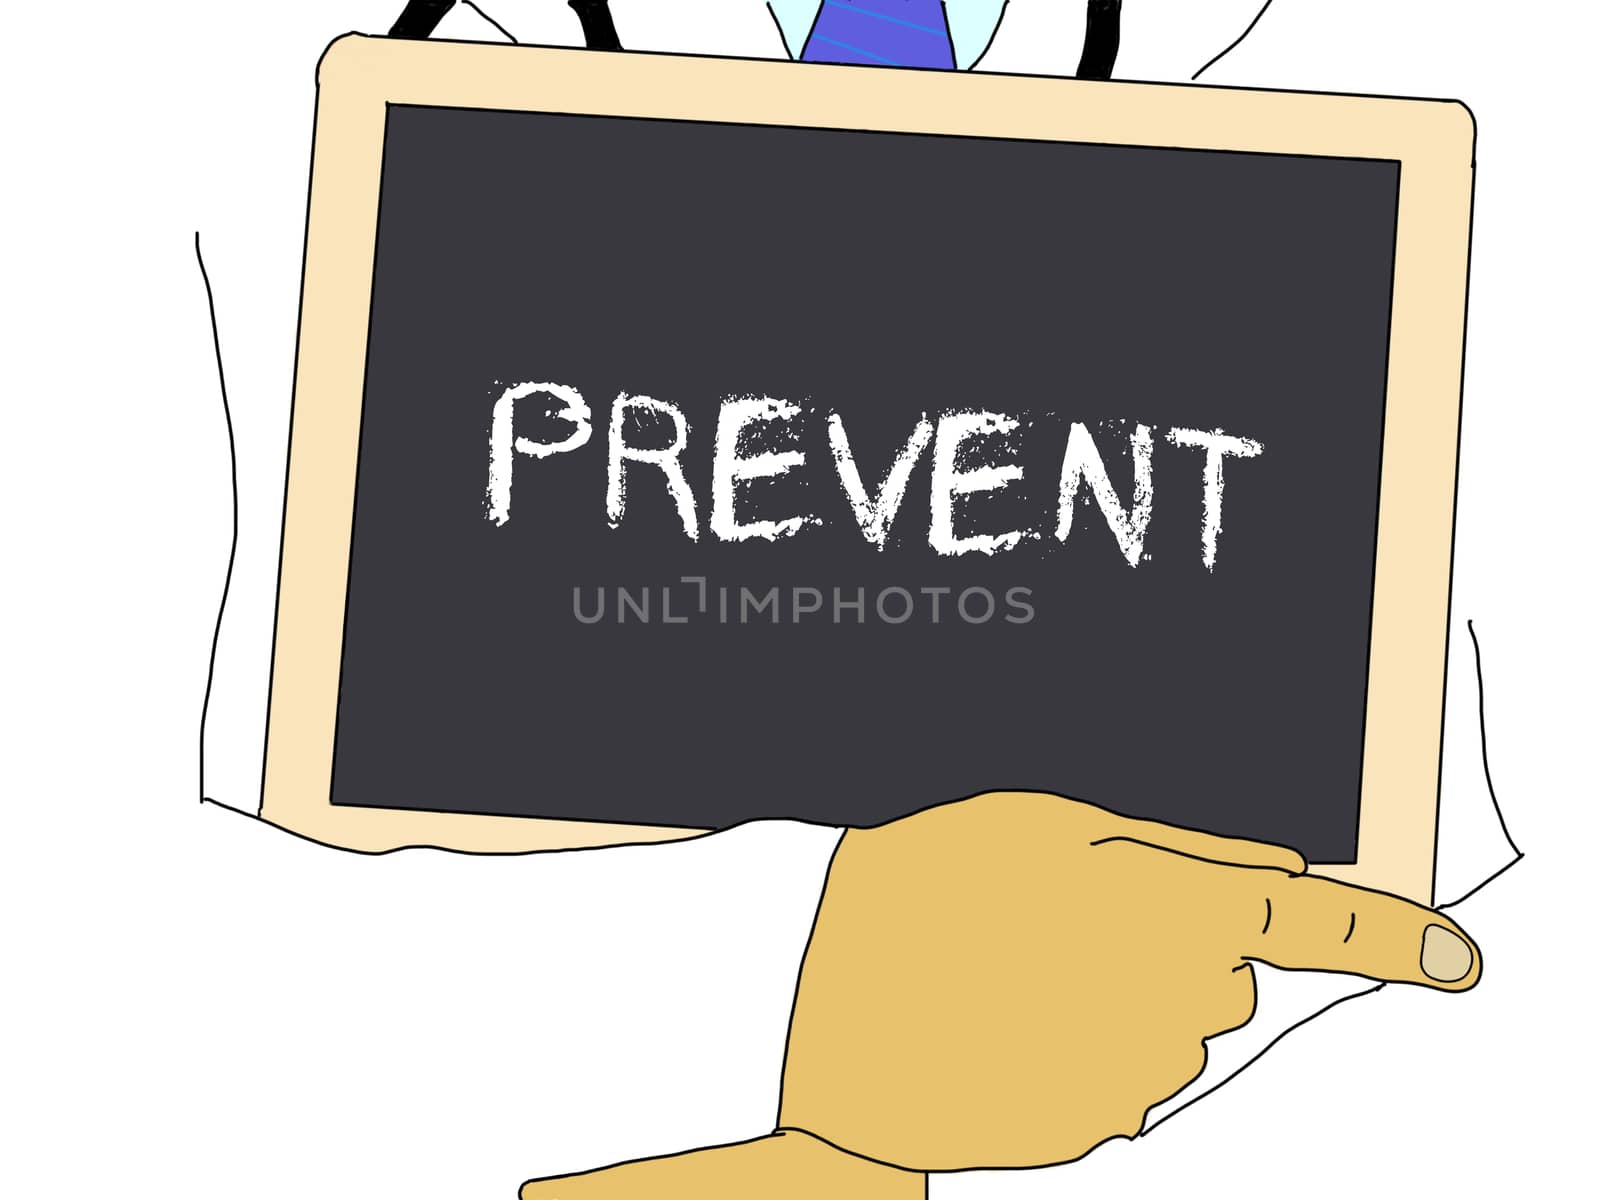 Illustration: Doctor shows information: prevent